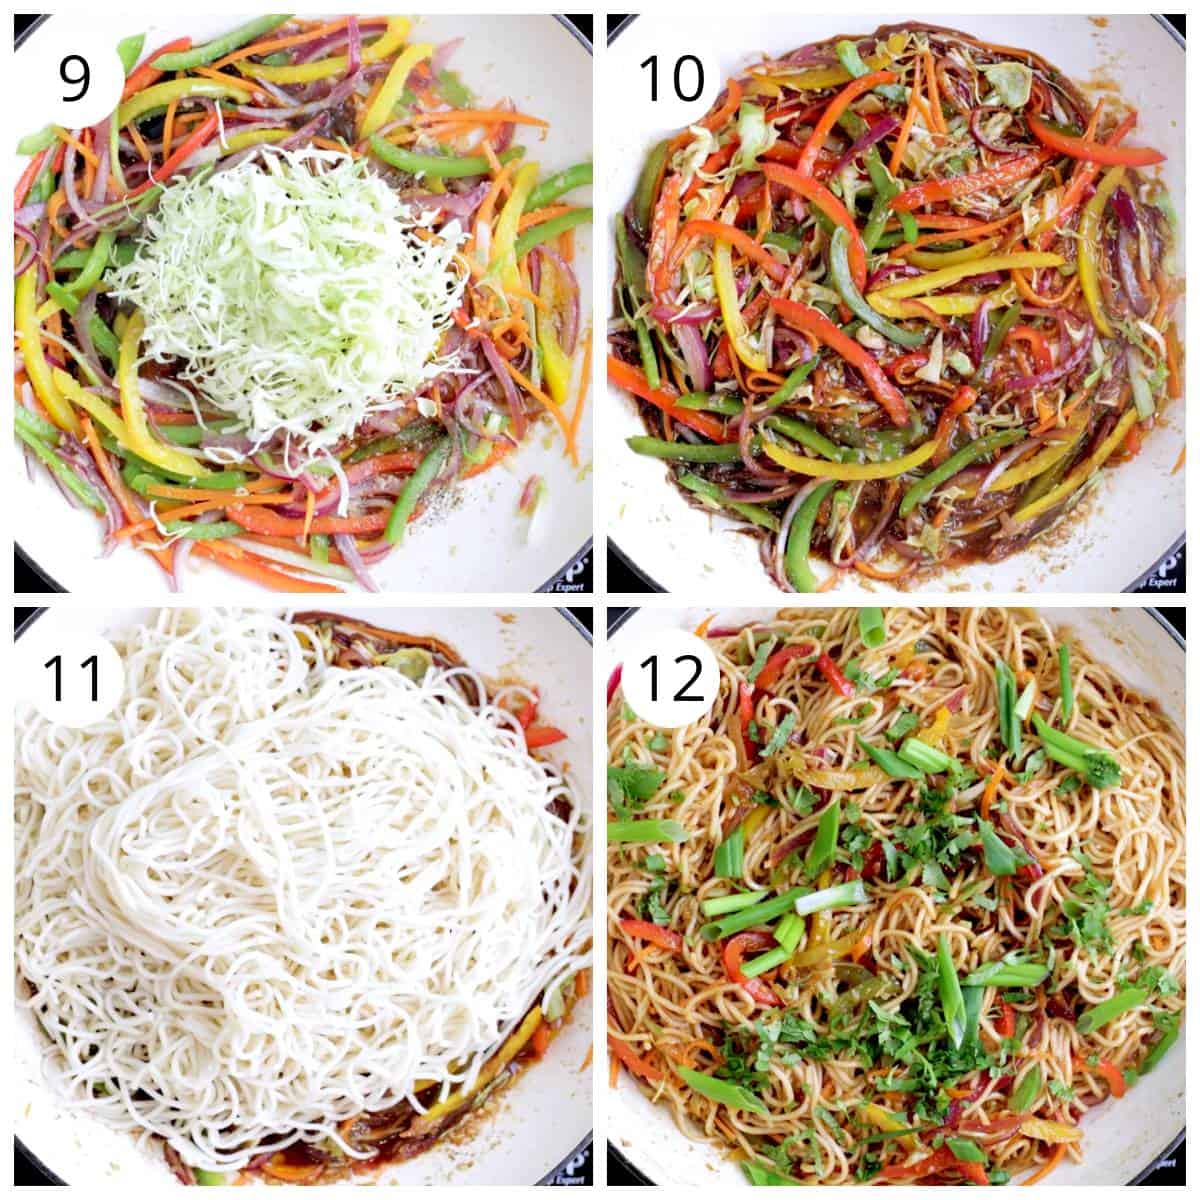 Steps for making veg noodles